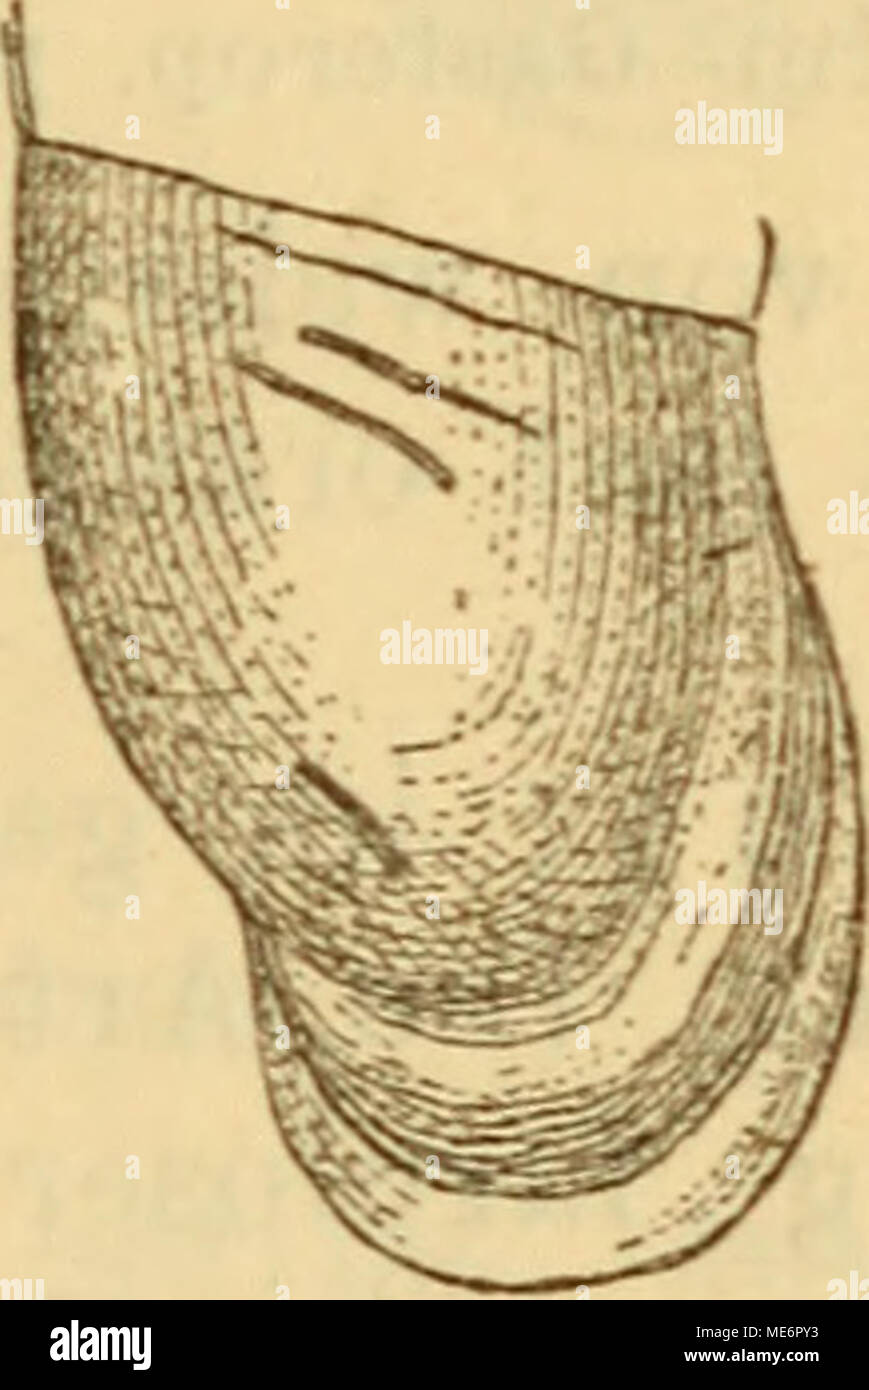 . Die Mollusken-Fauna Mitteleuropa's . Cl. fimbriata. Gehäuse: kaum geritzt, spindelförmig, mit verschmä- lert ausgezogener Spitze, festschalig, fein gestreift, braun- gelb, durchscheinend^ ziemlich glänzend; Umgänge 11—12, ziemlich gewölbt, durch eine sehr bezeichnete Naht getrennt: Mündung birnförmig, schmal, Gaumen mit einer breiten, saumartigen, weissen Wulst belegt, die den Rand nie be- rührt, sondern zwischen sich und ihm einen feinen, dunk- leren Streifen freihält, auch ist sie nicht vollkommen pa- rallel dem Mundsaume, sondern tritt in der Mitte der Mün- dung mehr oder weniger von dems Stock Photo